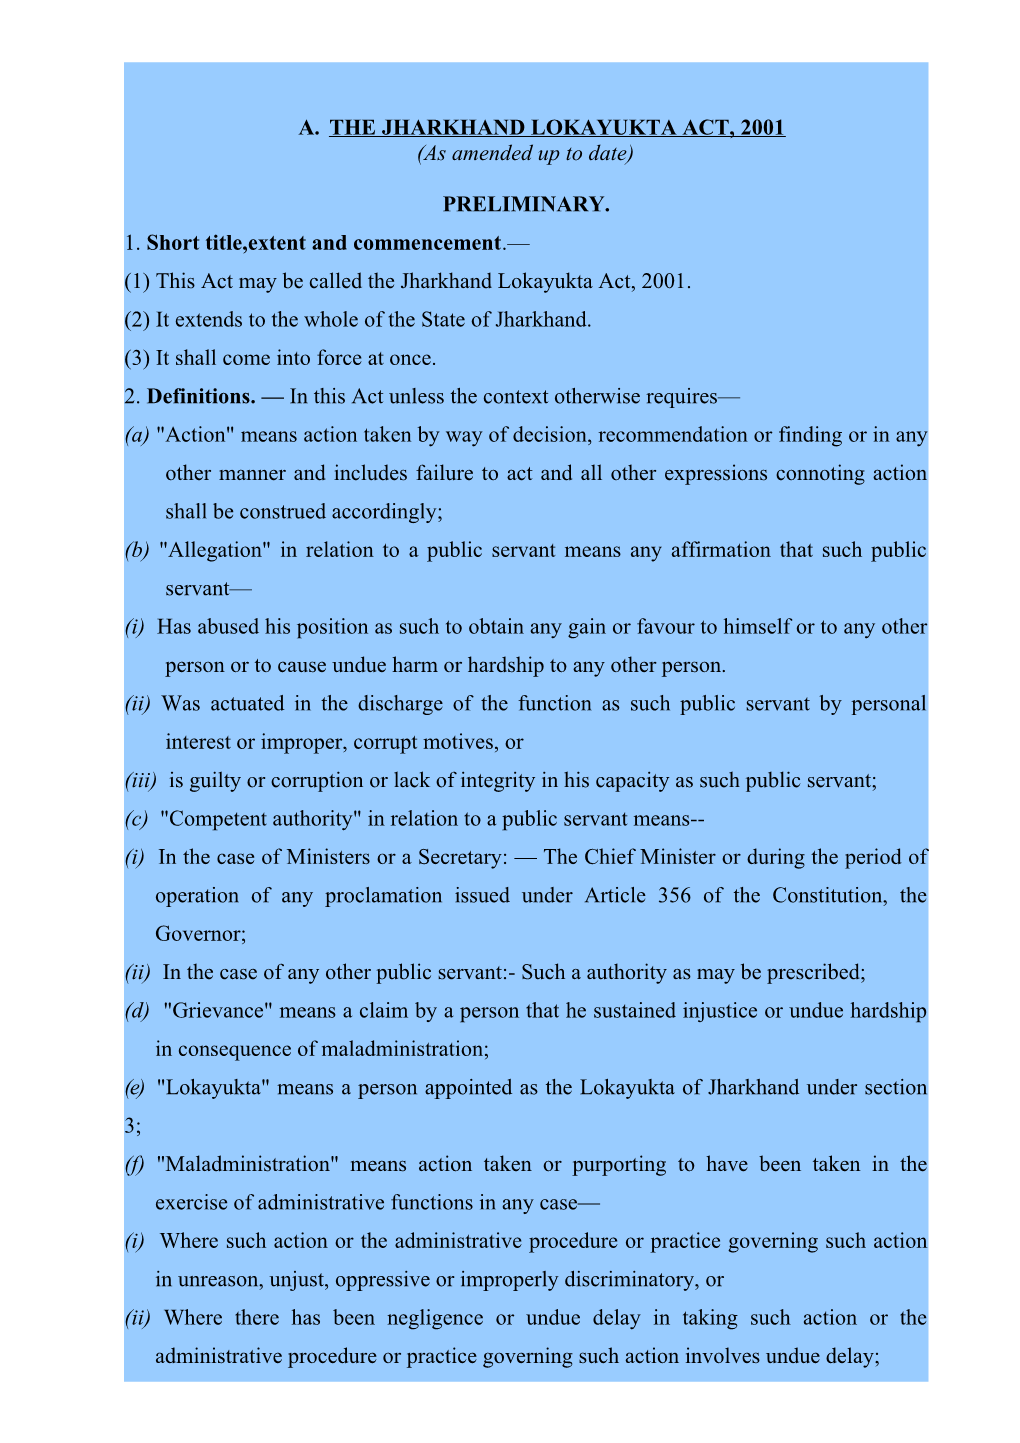 A. the Jharkhand Lokayukta Act, 2001